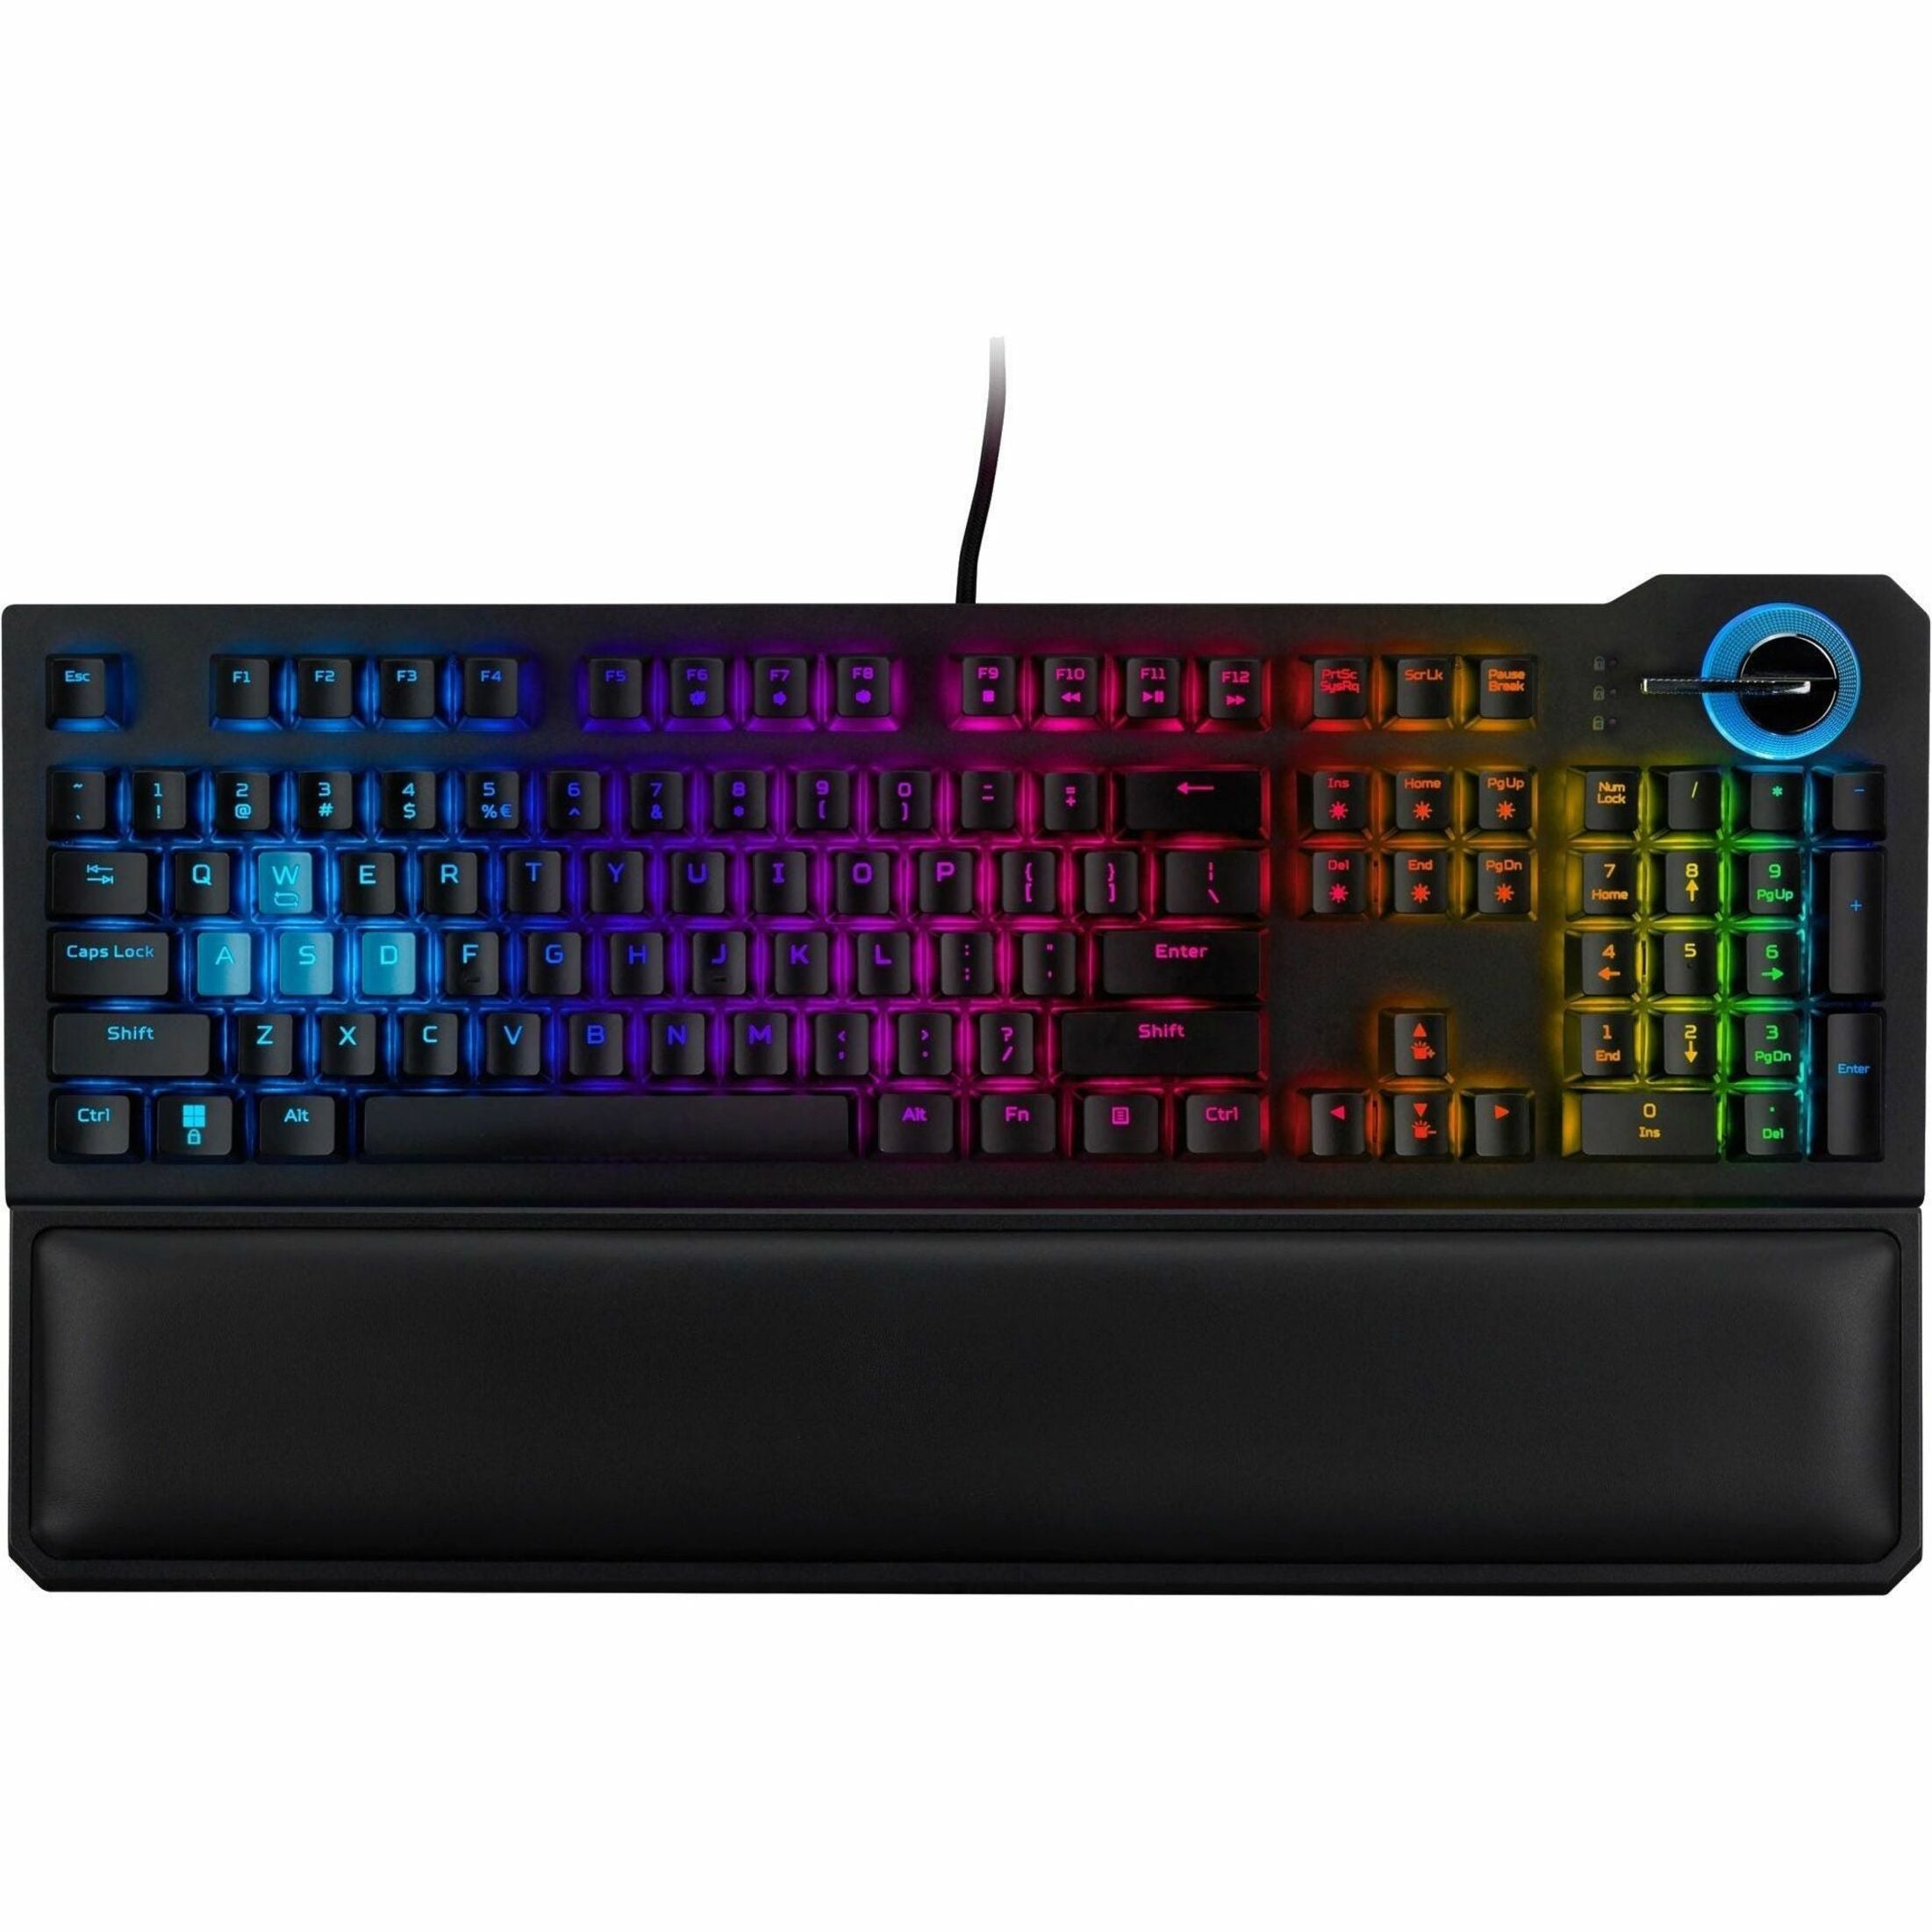 Predator GP.KBD11.01N Aethon PKW120 Gaming Keyboard, RGB LED Backlight, Opto-mechanical Keyswitch Technology